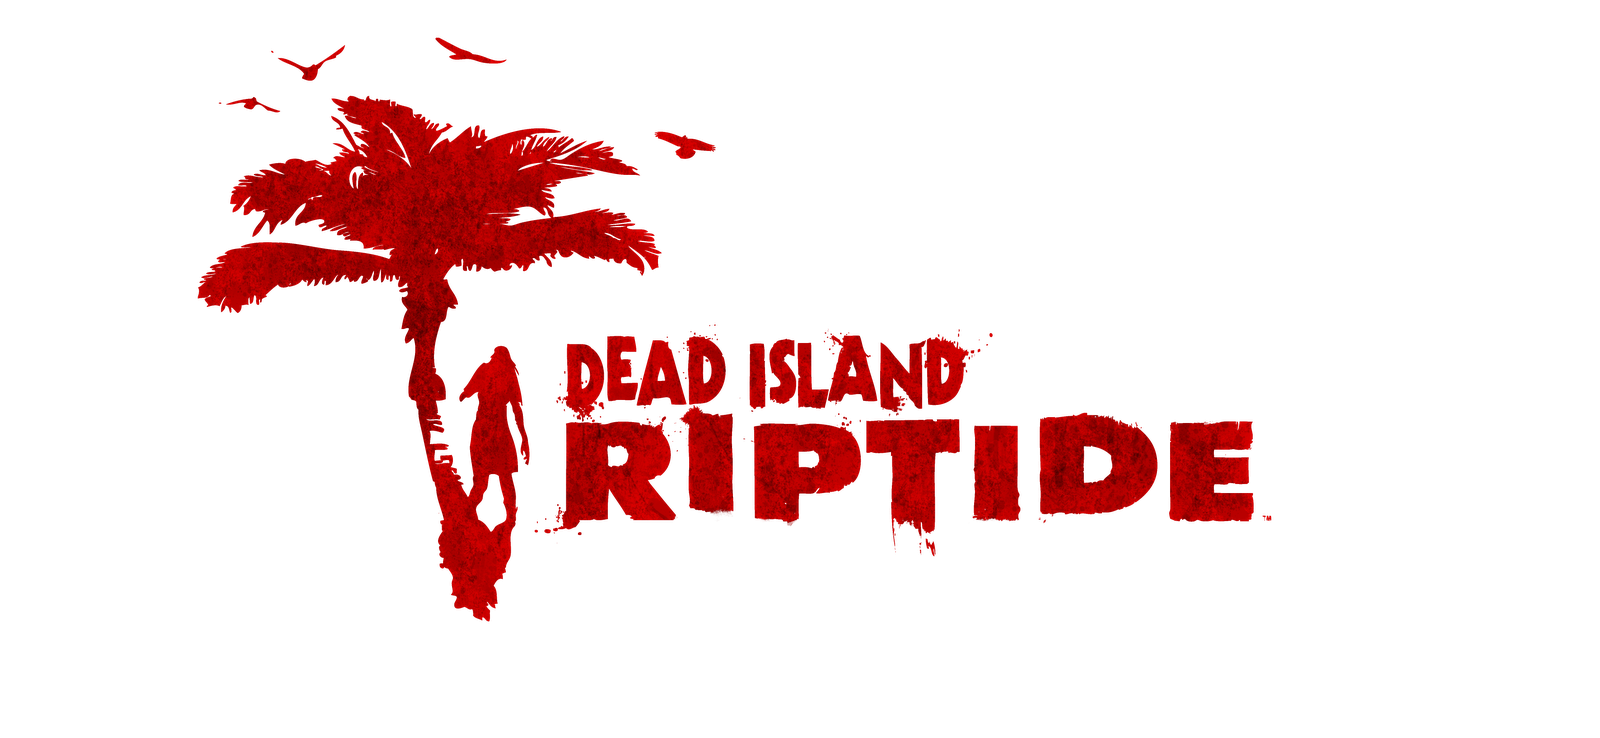 Dead island reptide. Dad Island ripyide.